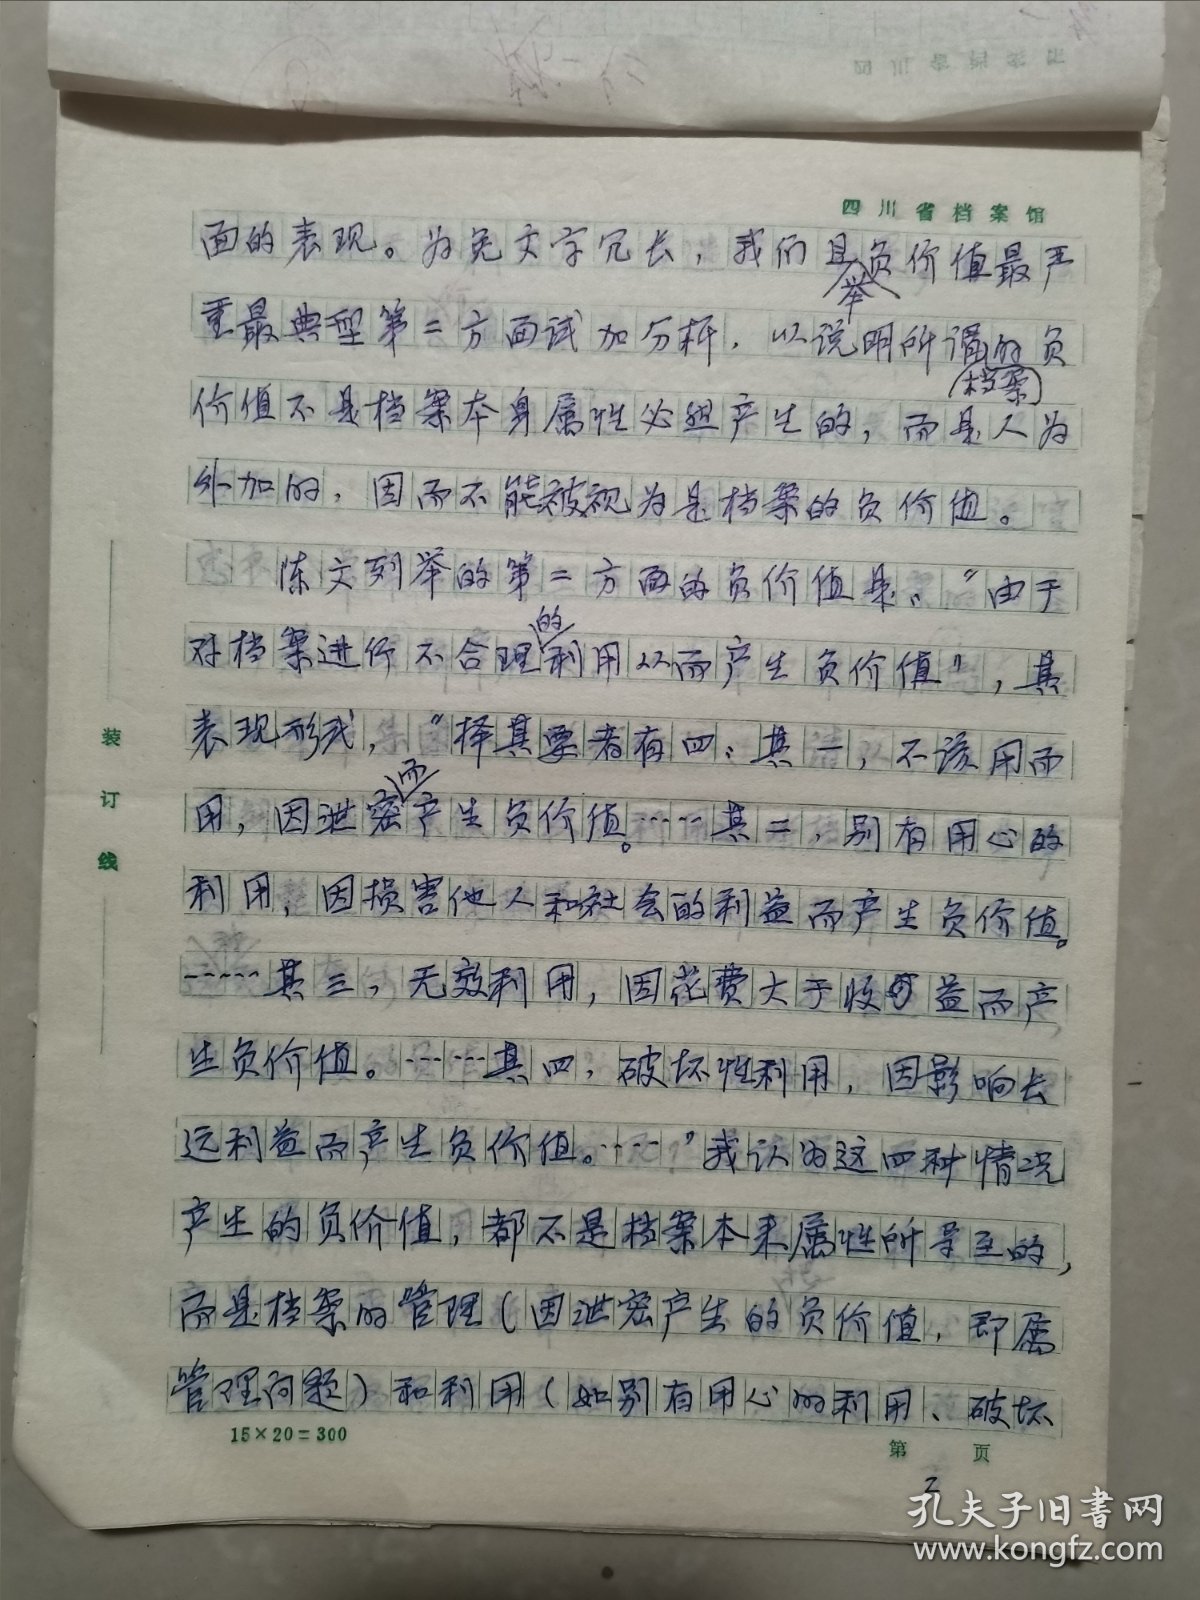 陈贤华（四川大学 档案系第一任系主任）手稿《读档札记三则》